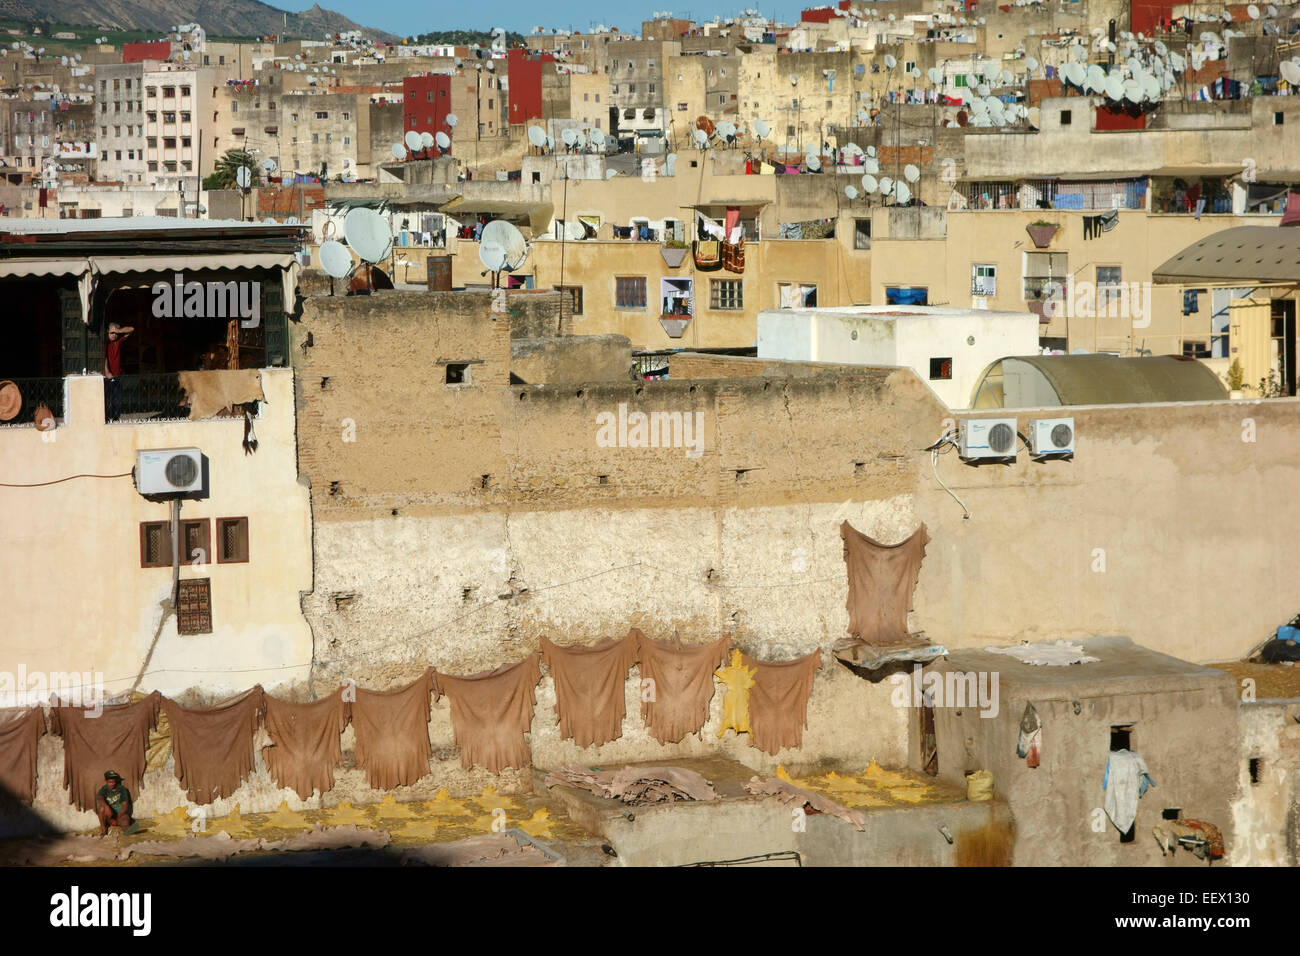 Vue aérienne de Chouwara tannerie dans fes, Maroc Banque D'Images